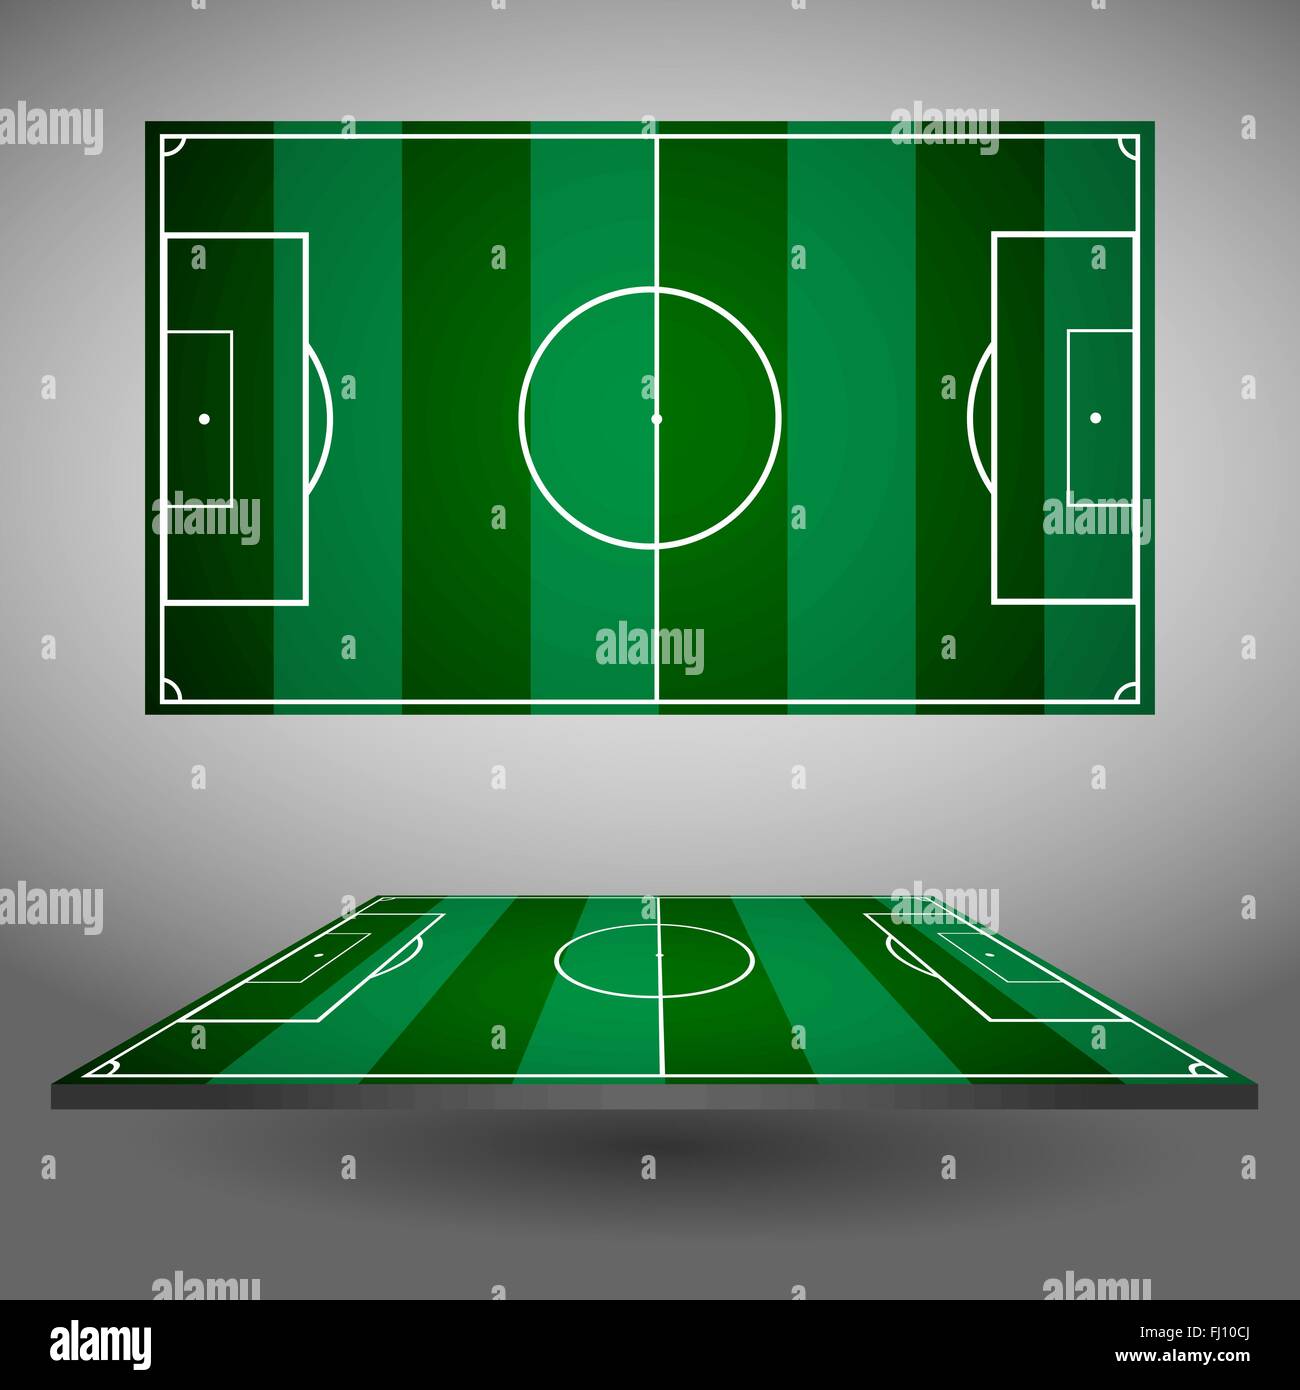 Fußball oder Soccer Spielfeld oben und Seitenansichten. Sportstadion  isoliert auf einem grauen Hintergrund. Digitale Vektor-Illustration  Stock-Vektorgrafik - Alamy